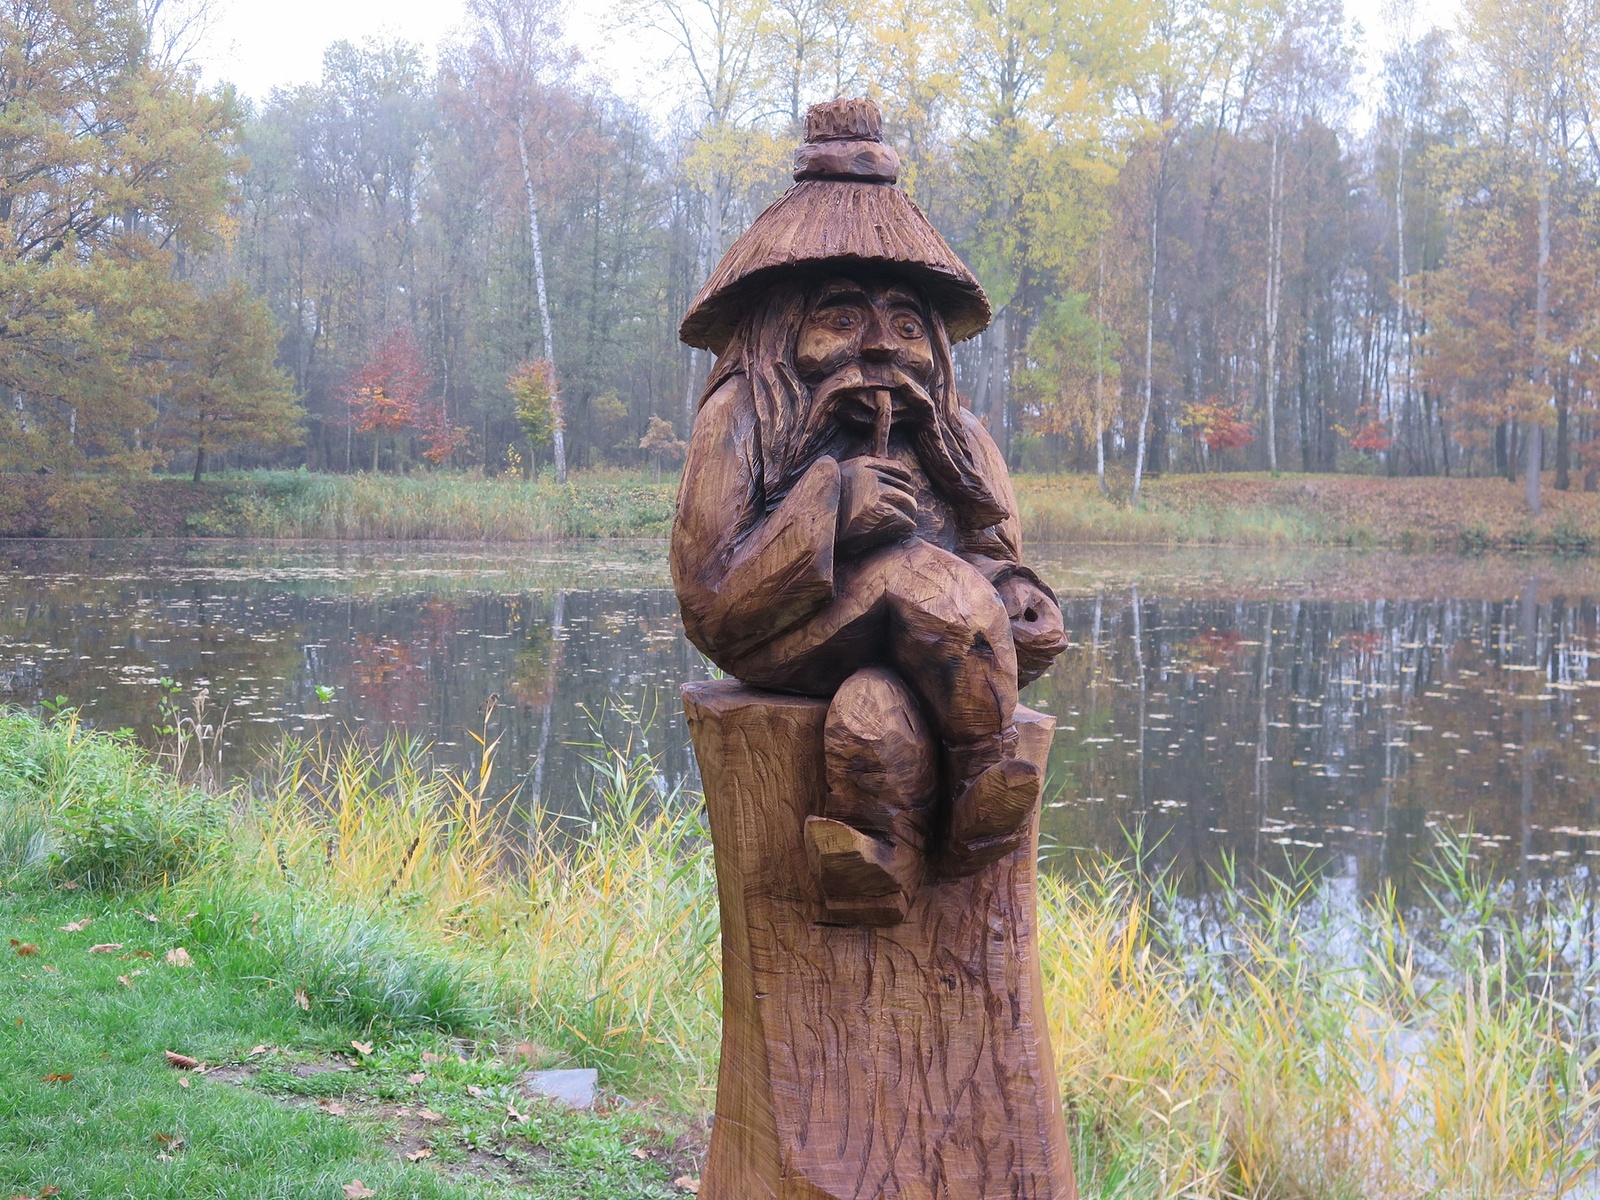 Les v Lípě oživují dřevěné sochy, vytvořili je umělci na letním  Dřevosochání - Českolipský deník